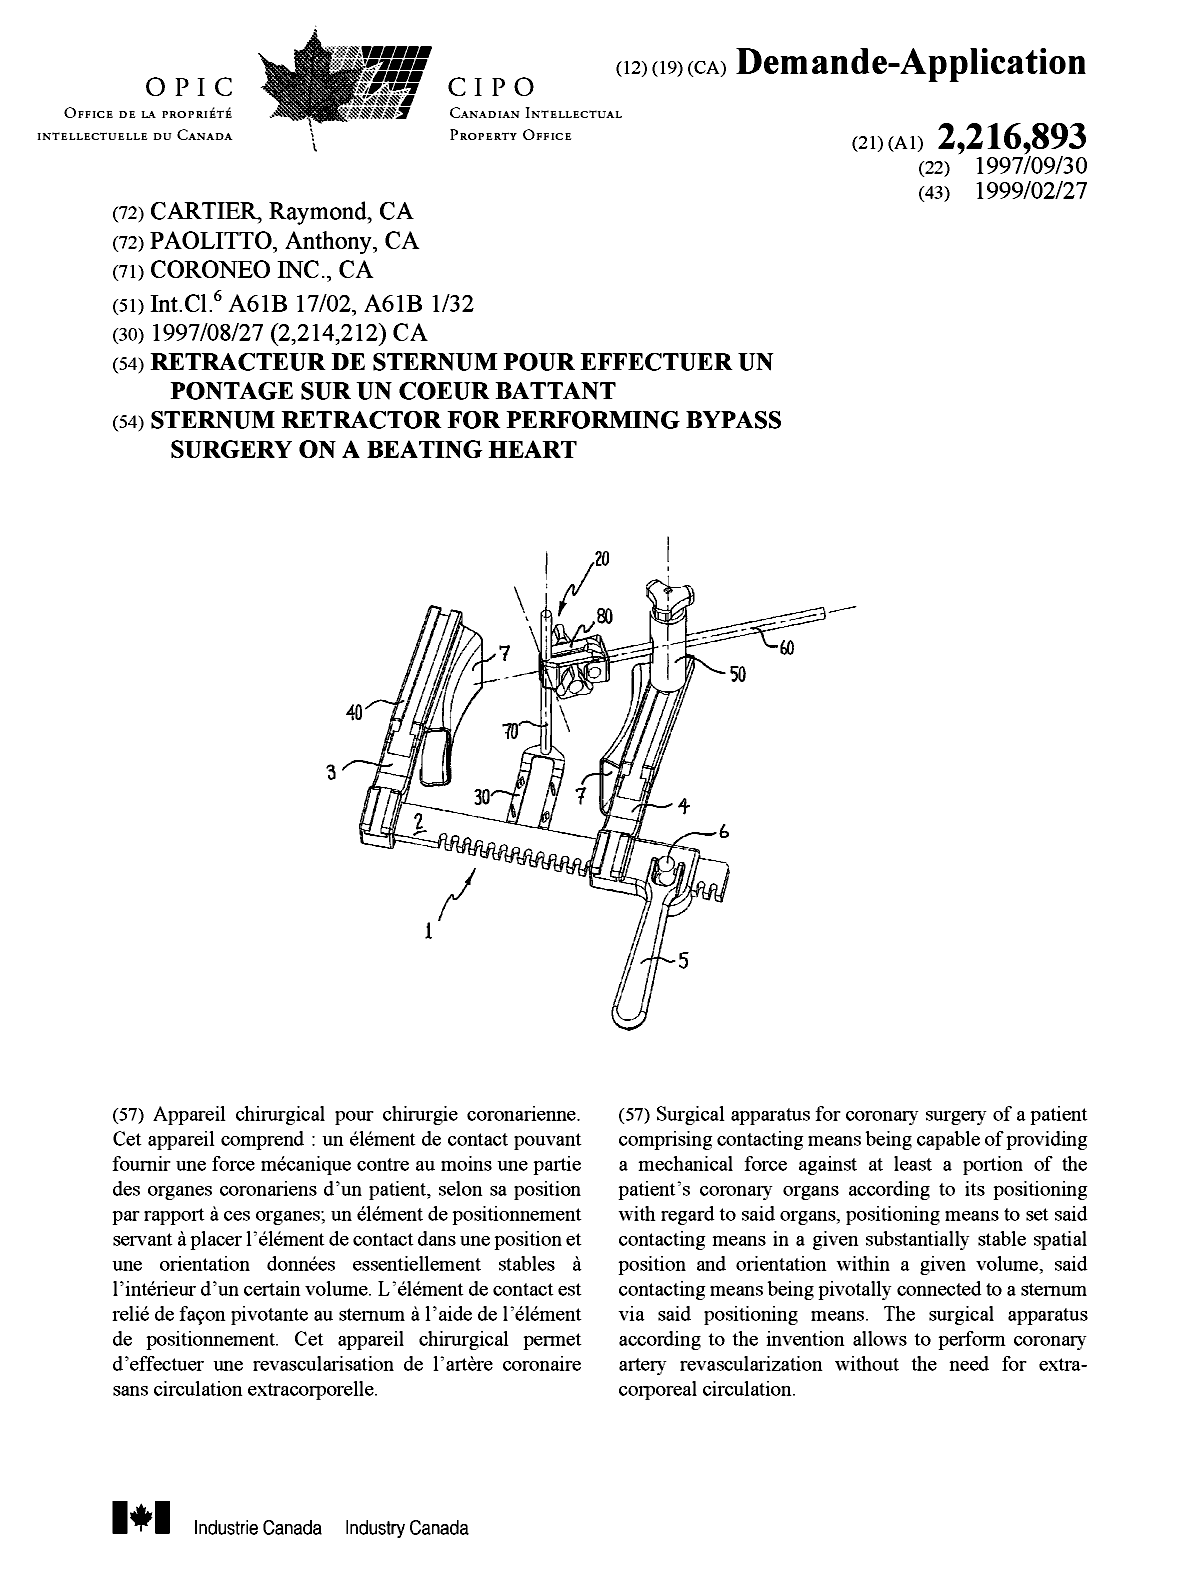 Document de brevet canadien 2216893. Page couverture 19990309. Image 1 de 1